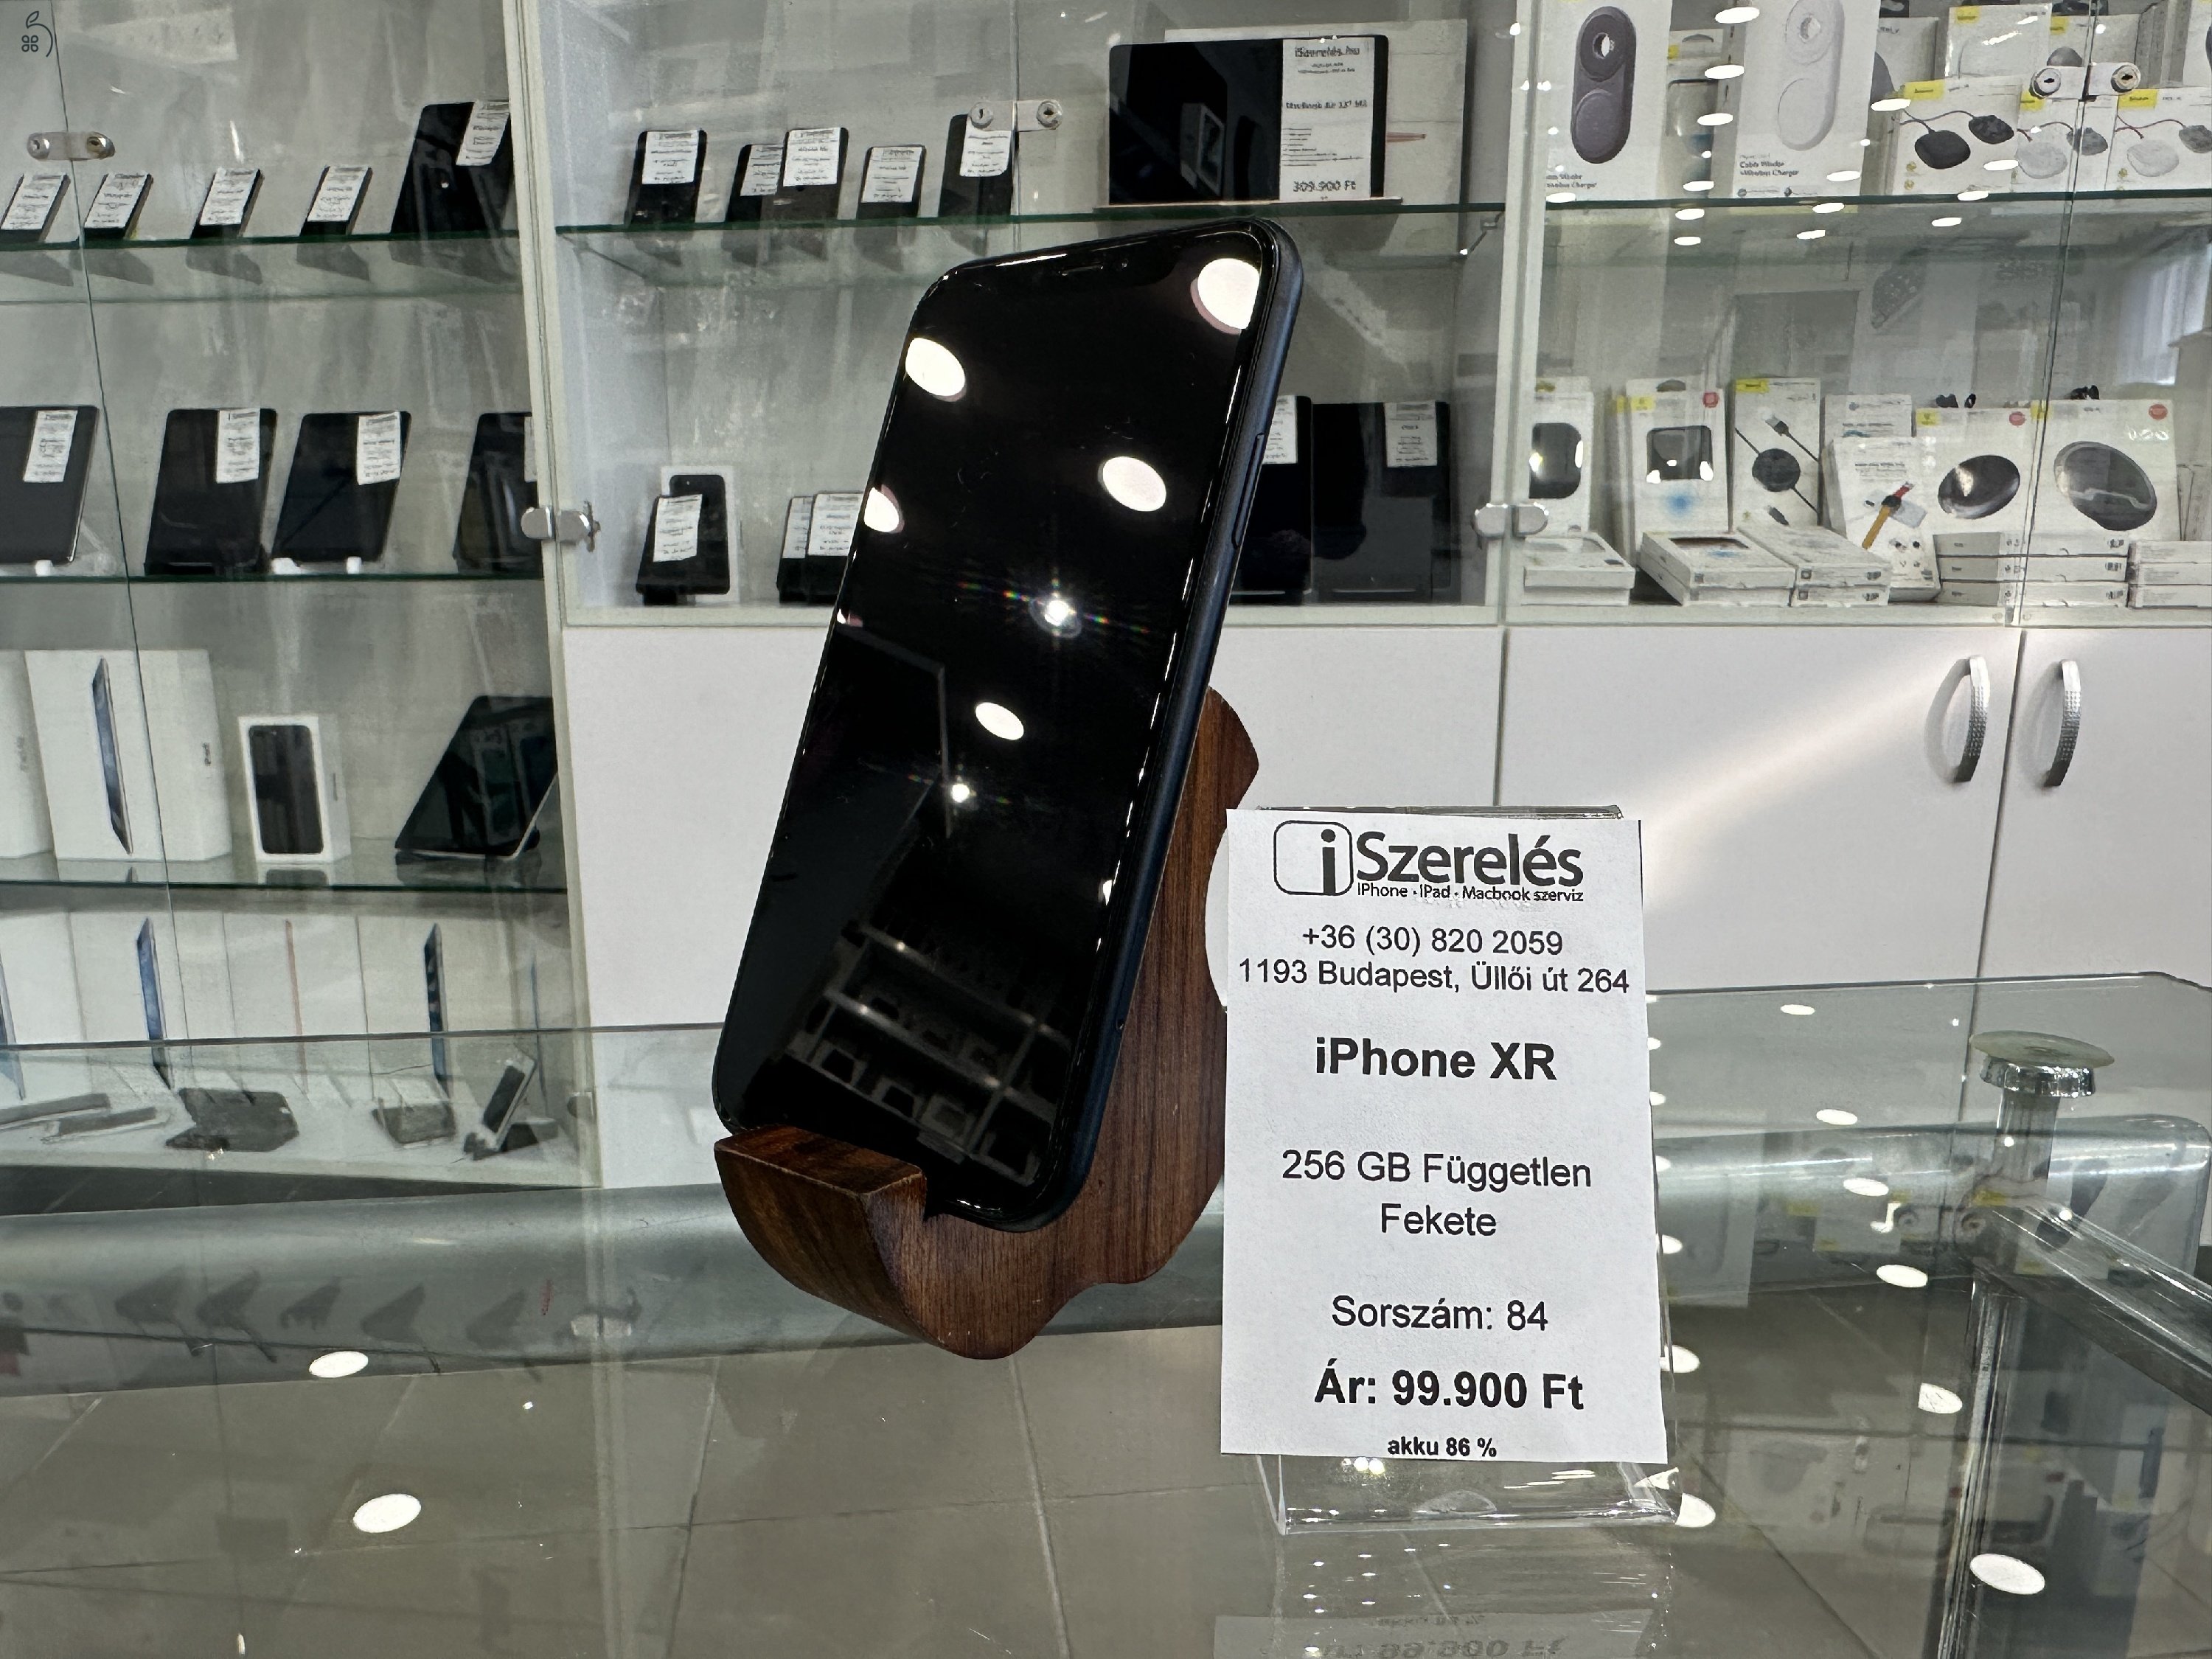 iPhone XR 256GB független fekete akku 86% garanciával (84) iSzerelés.hu